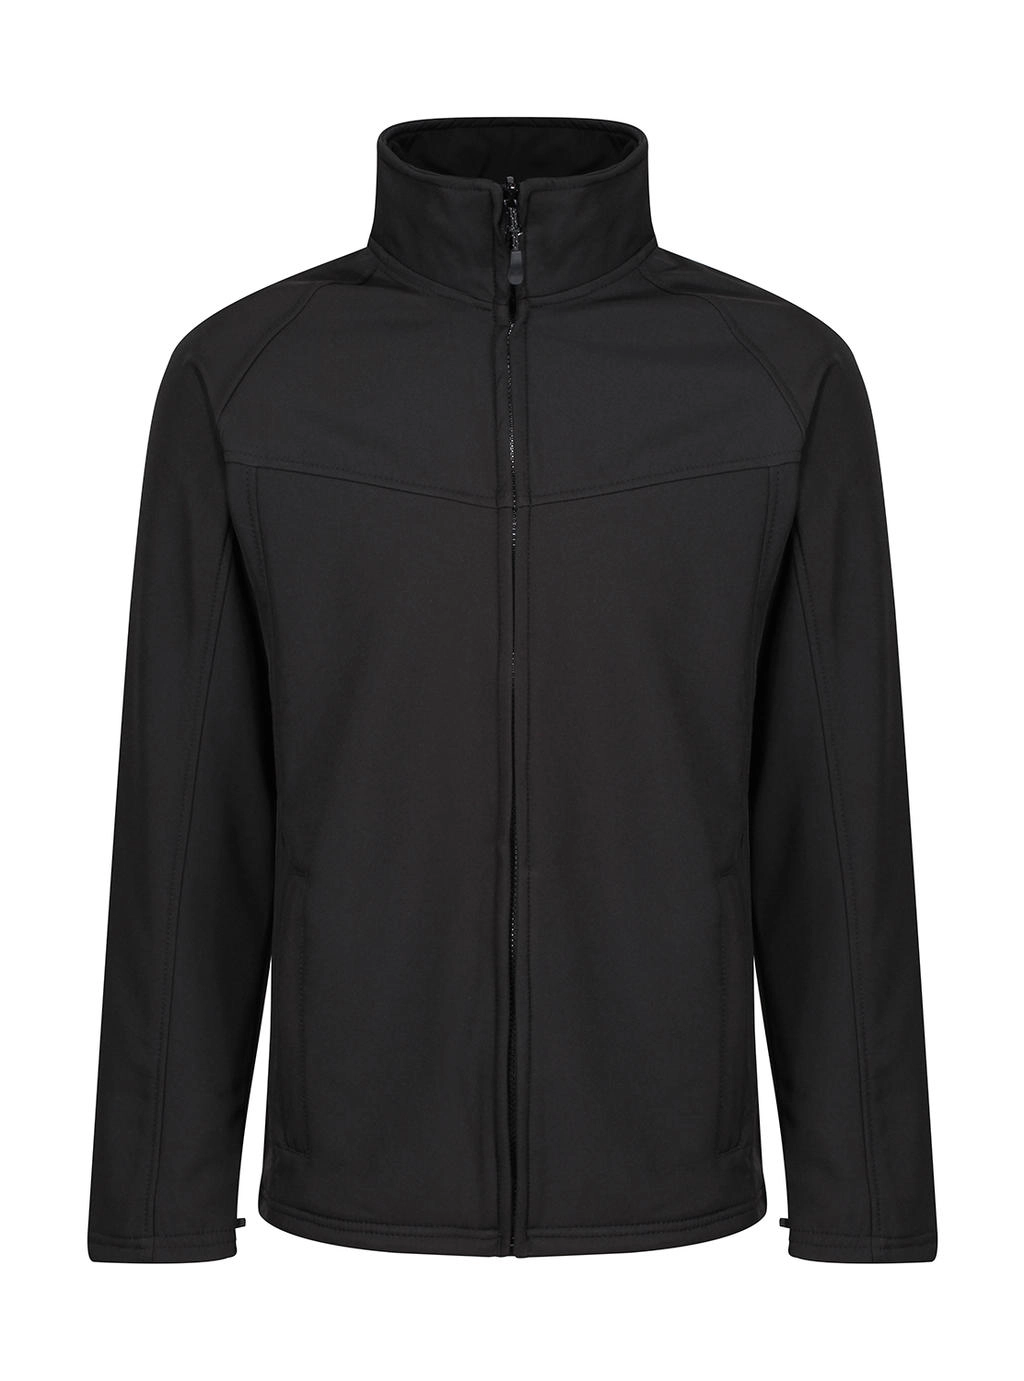 Uproar Softshell Jacket zum Besticken und Bedrucken in der Farbe Black/Black mit Ihren Logo, Schriftzug oder Motiv.